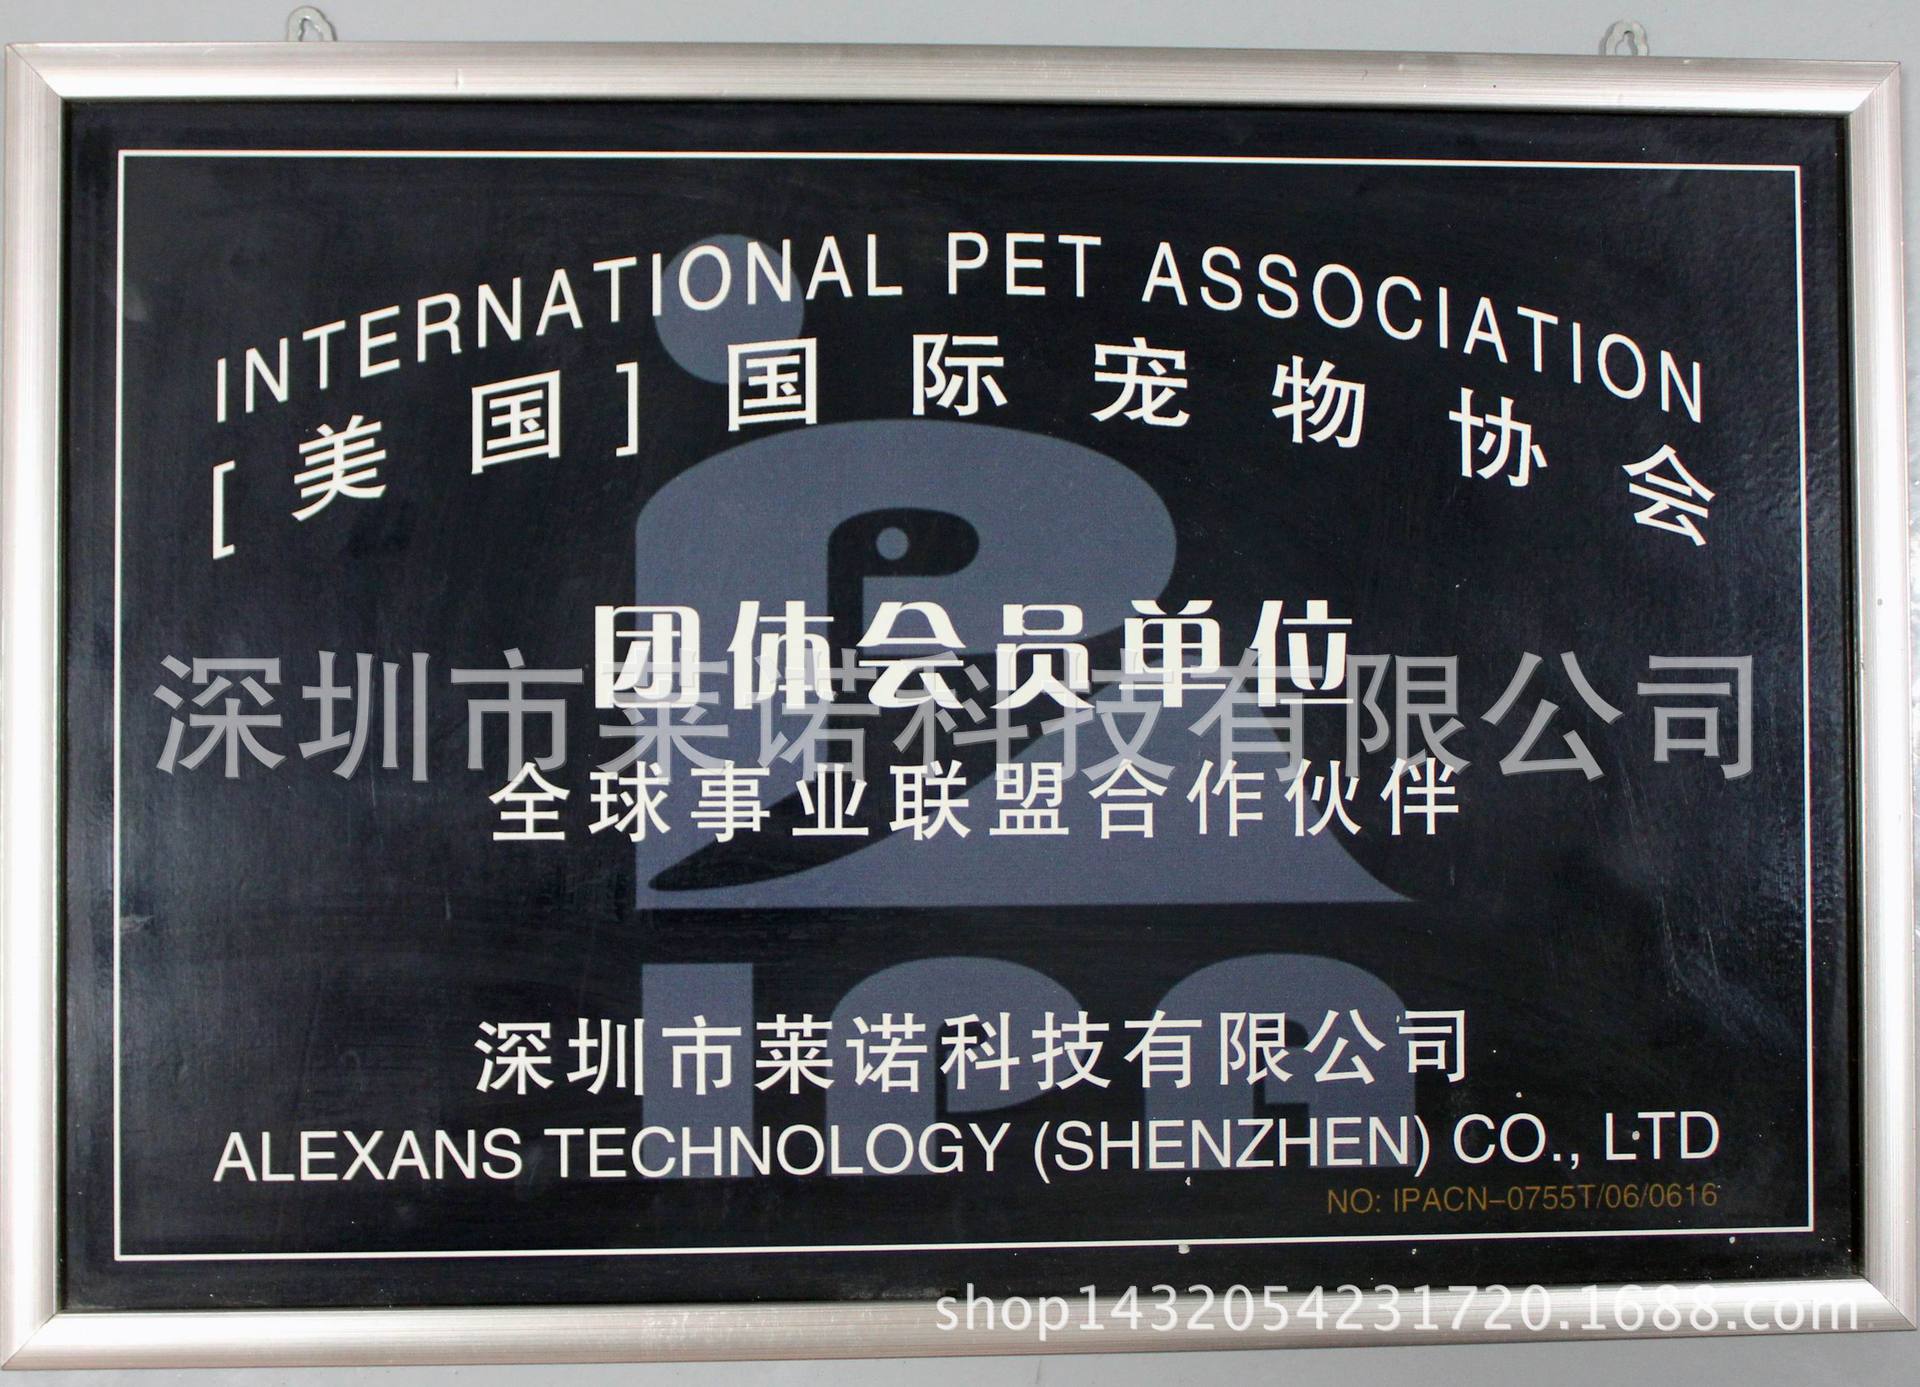 国际宠物协会证书